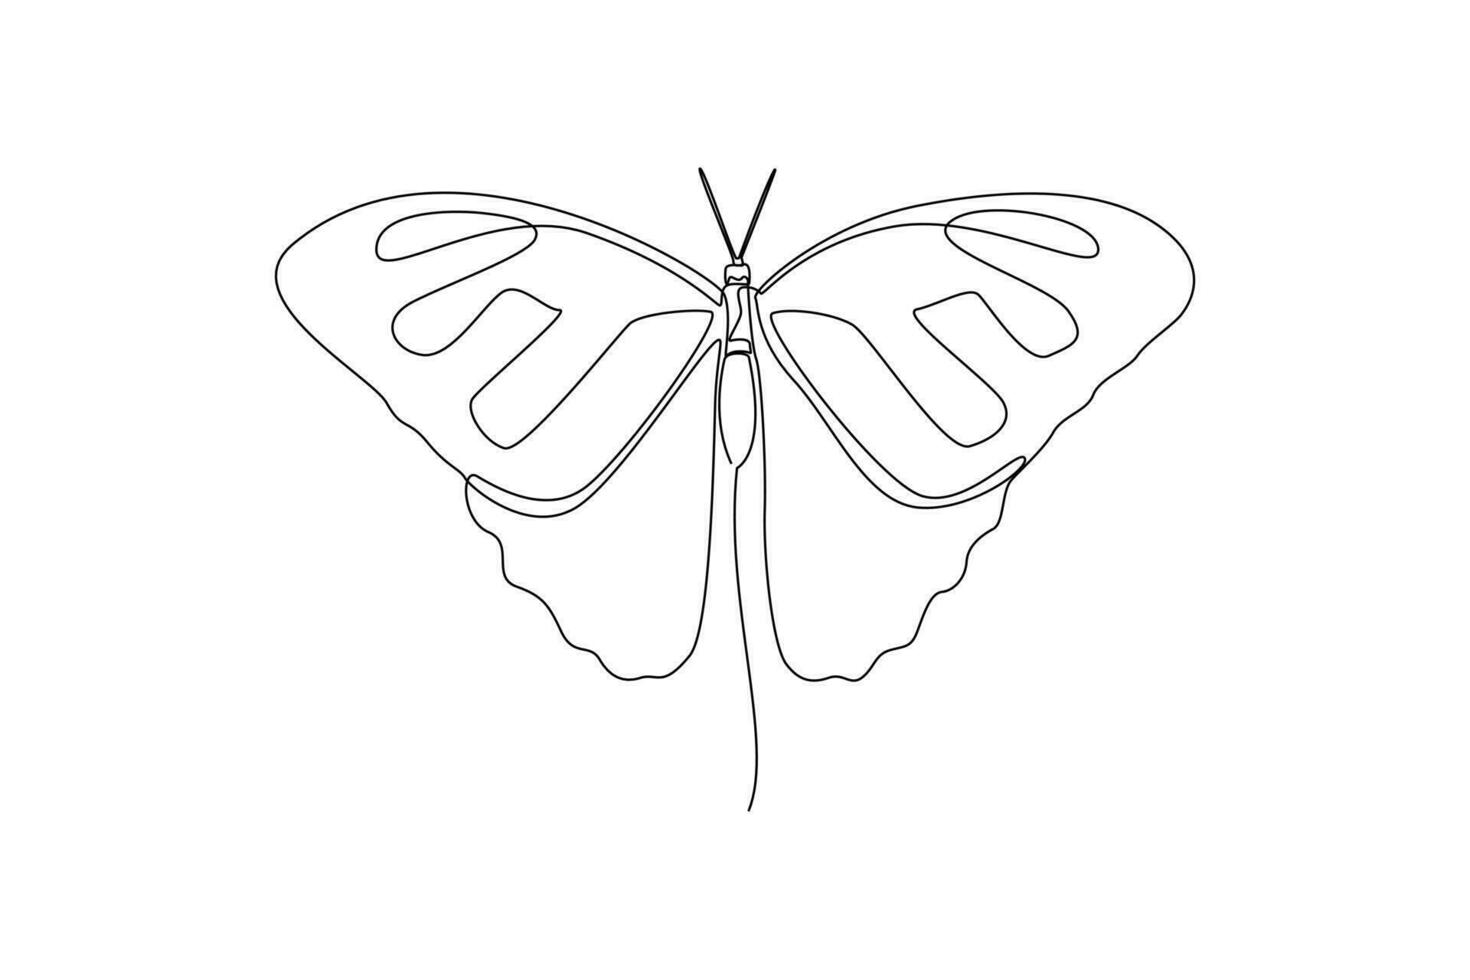 kontinuierlich einer Linie Zeichnung Insekten Konzept. Single Linie zeichnen Design Vektor Grafik Illustration.